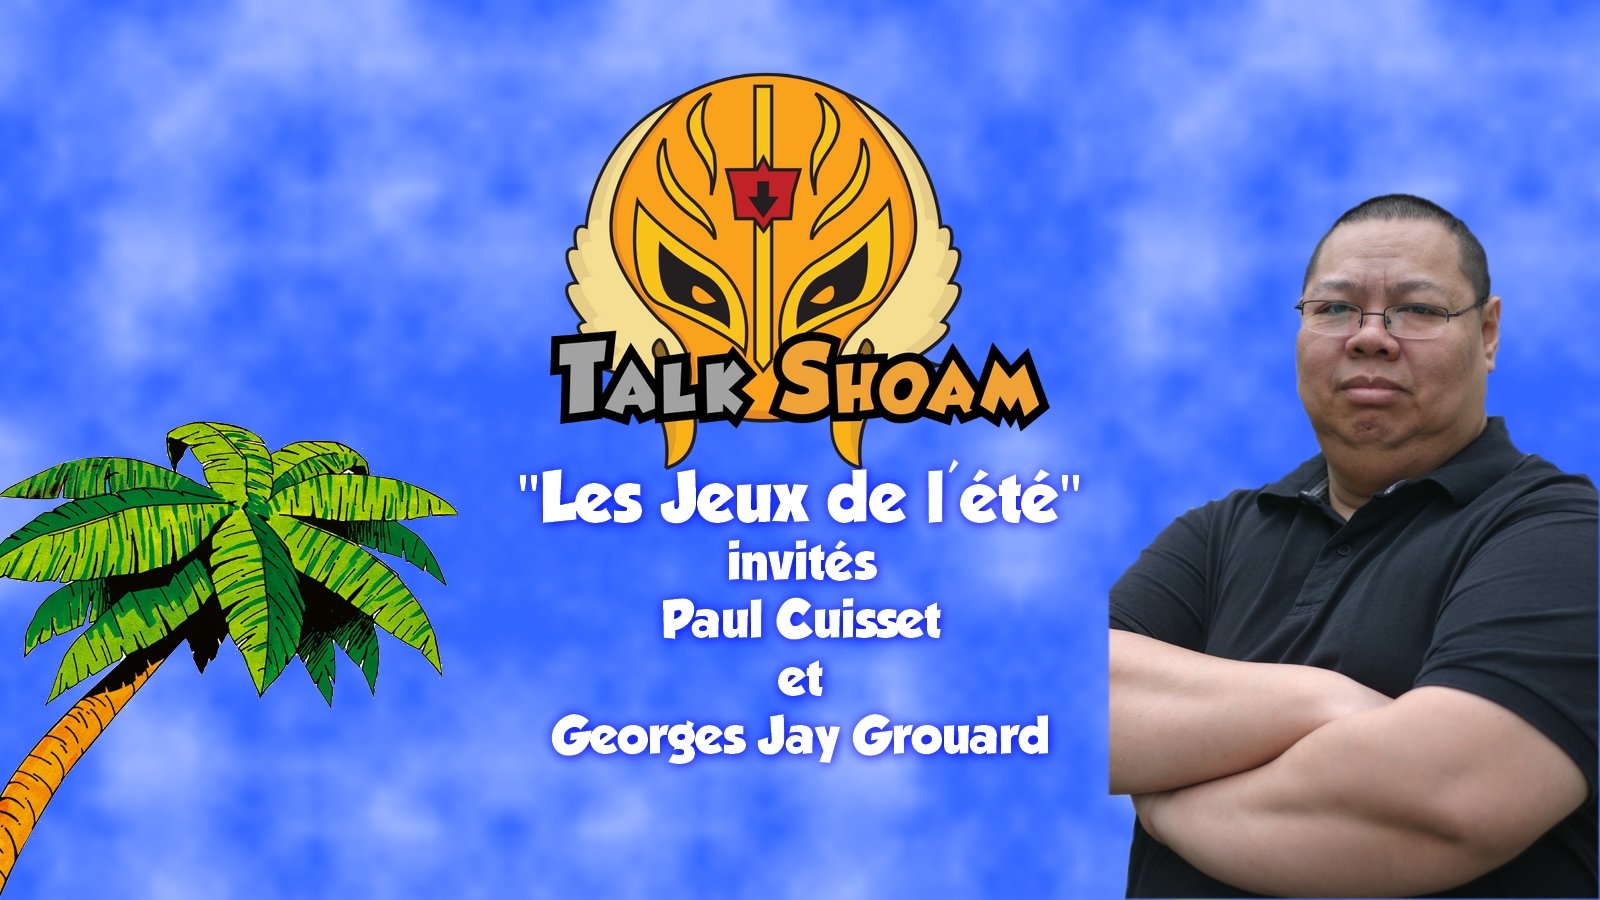 TalkShoam #3 "Les jeux de l'été" invités Paul Cuisset et Georges Jay Grouard